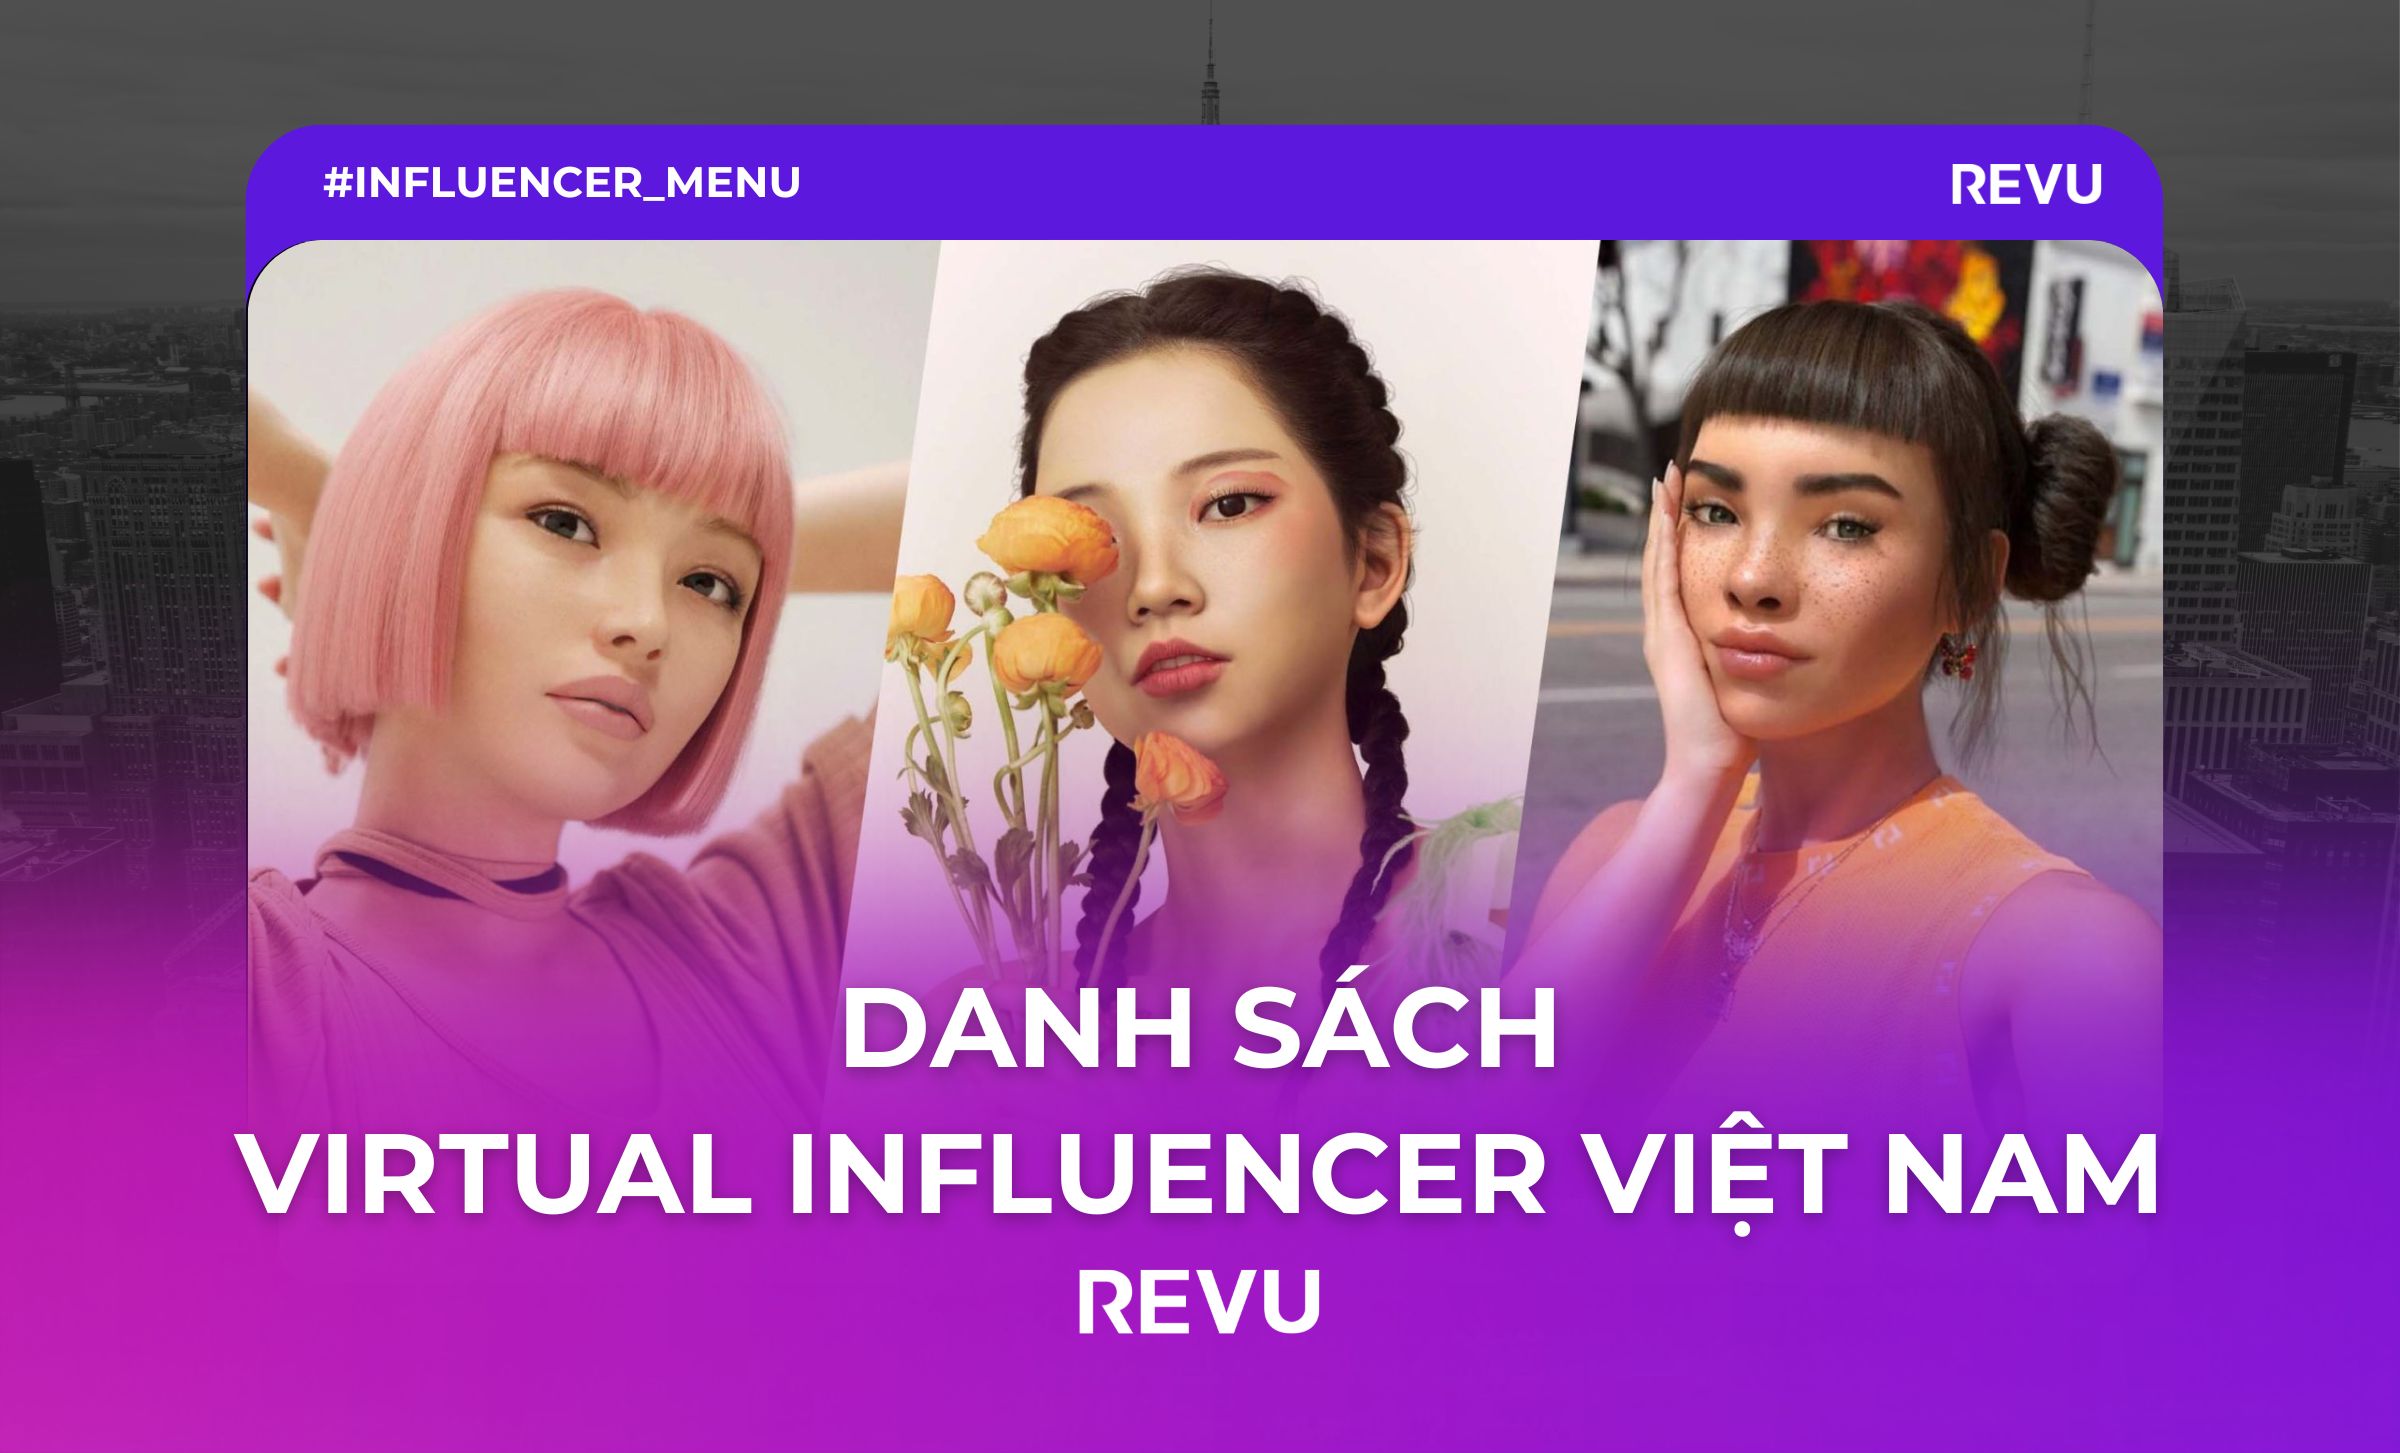 Virtual influencer Việt Nam AI influencer KOL ảo